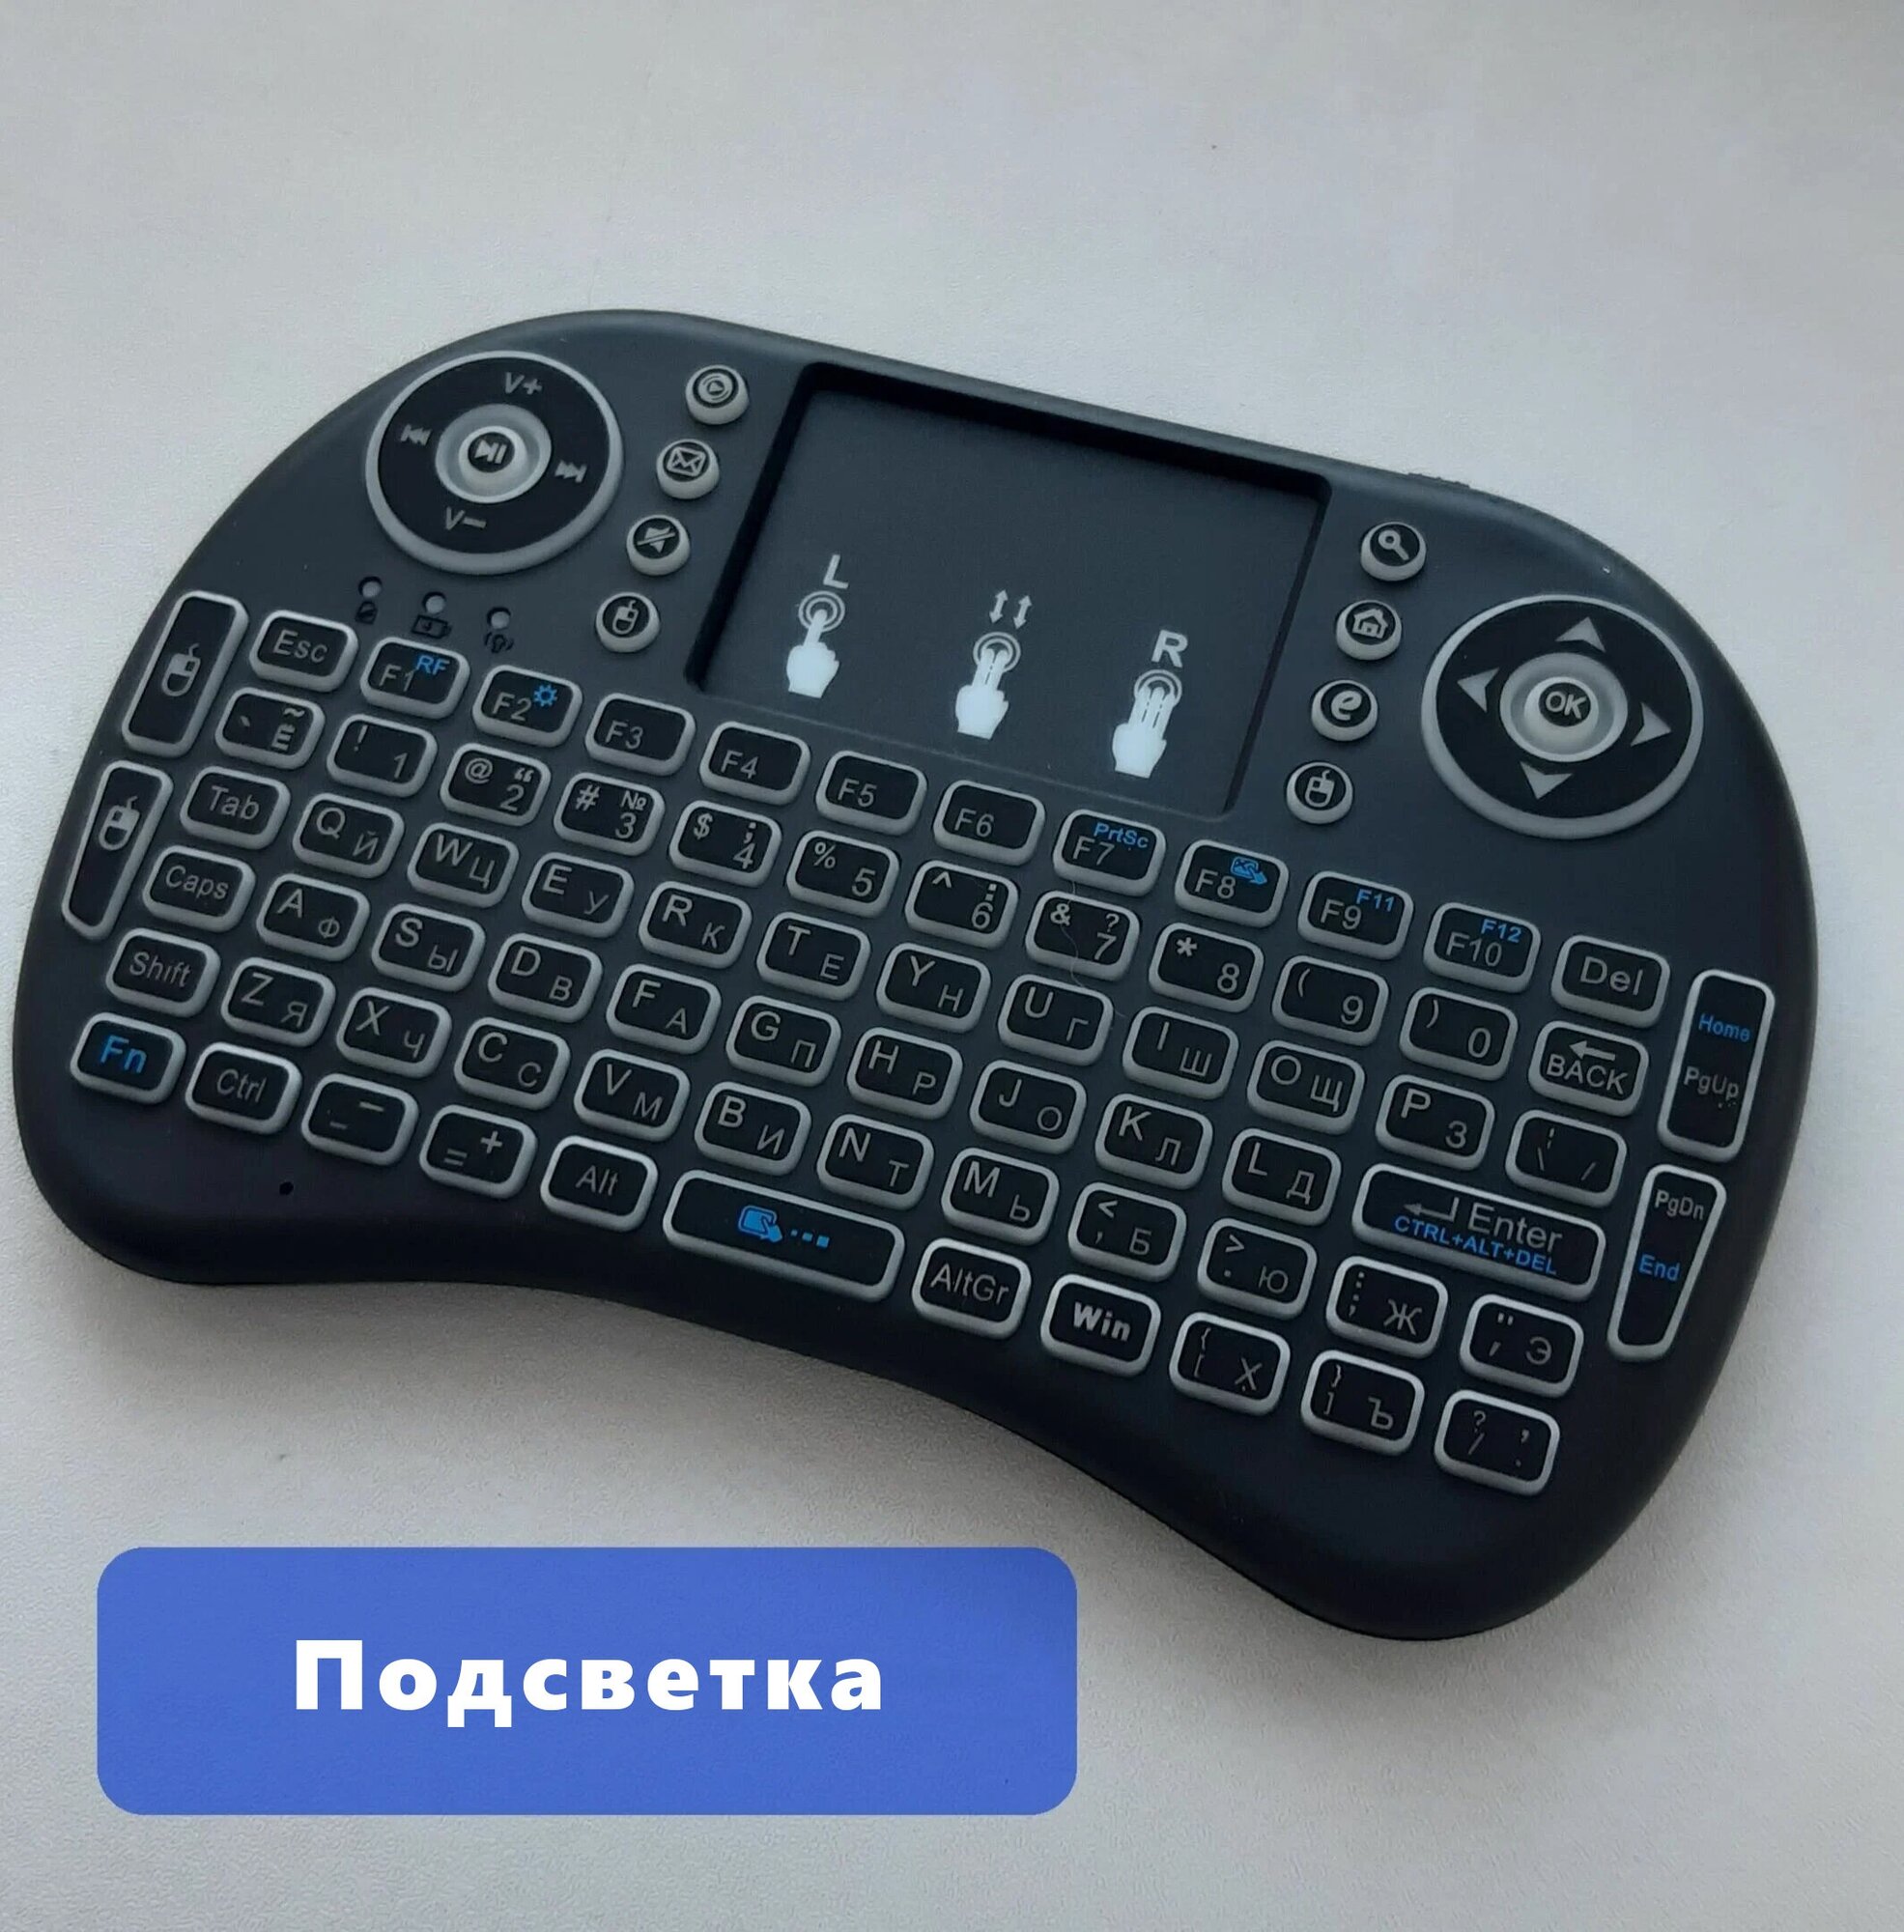 Беспроводная мини клавиатура и мышь с подсветкой (с тачпадом) i8b для телевизора, тв приставки, проектора, ПК (Черная)